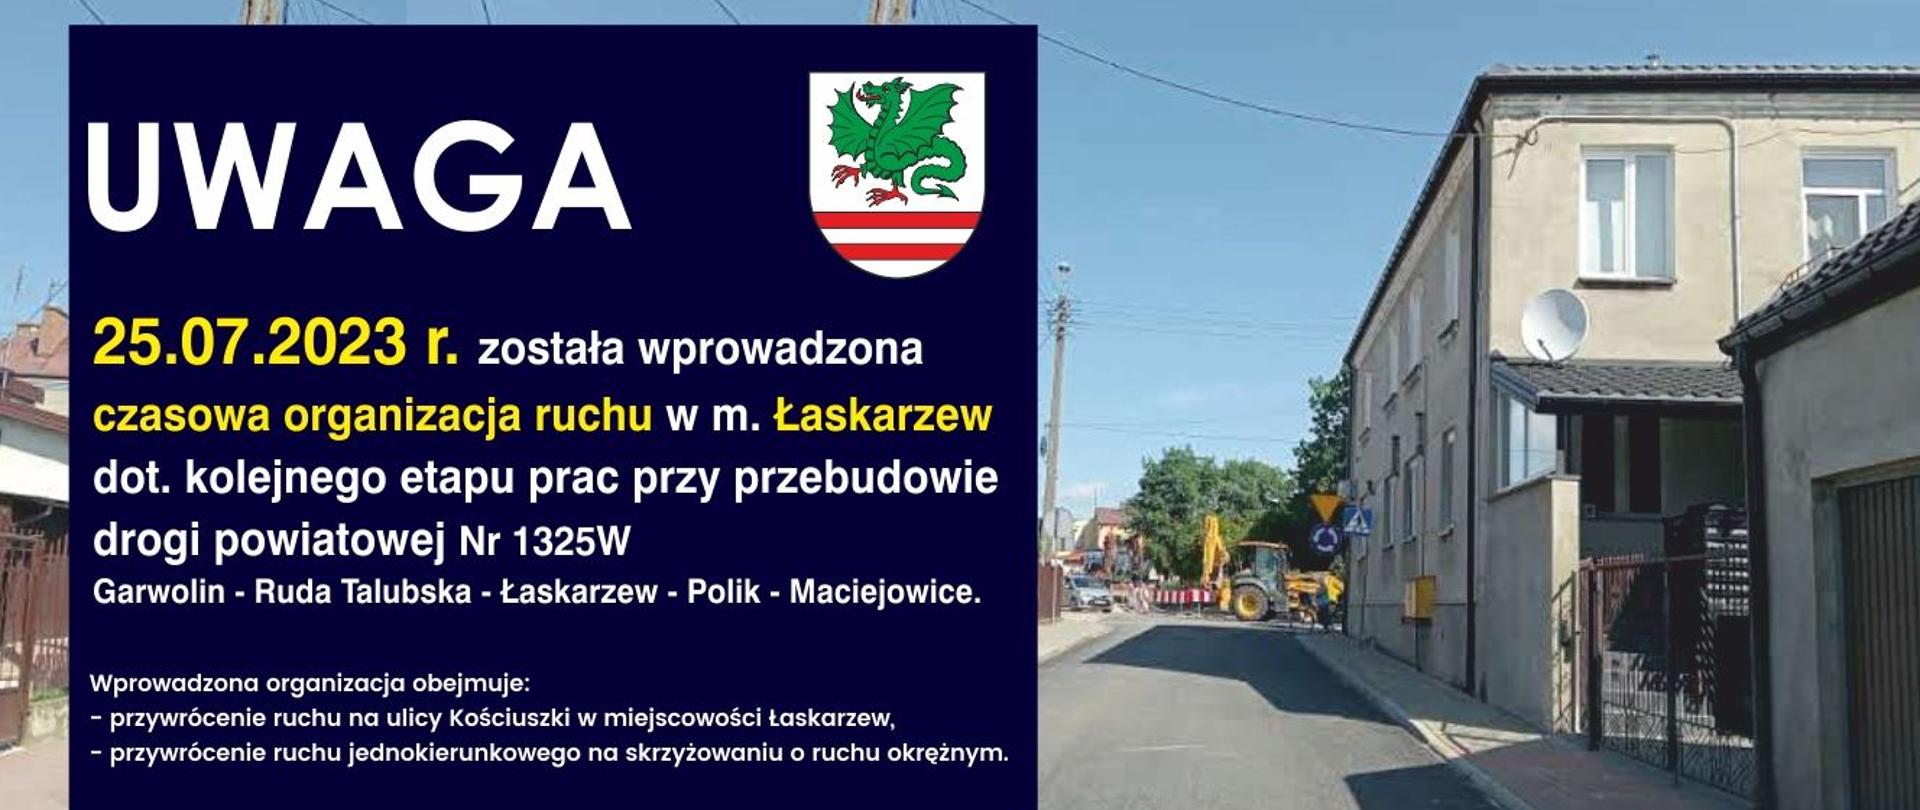 Informacja-czasowa organizacja ruchu w Łaskarzewie